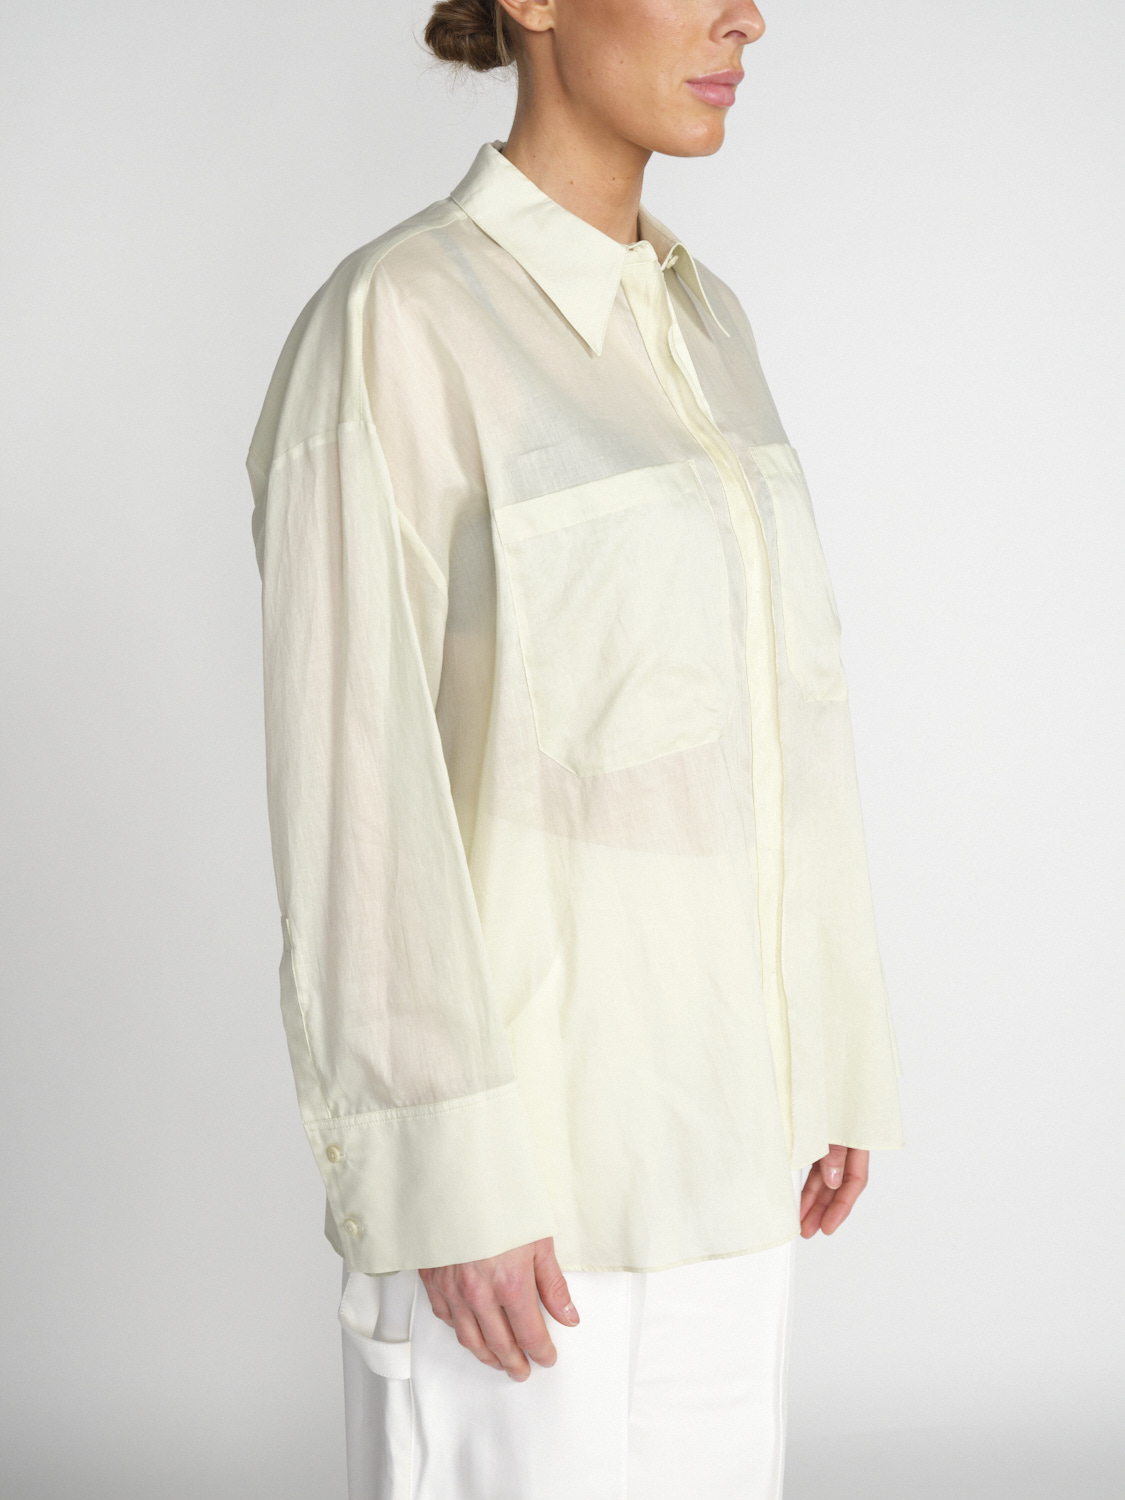 Dorothee Schumacher Fantasy - Leicht transparente Bluse aus Baumwolle 	  hellgrün S